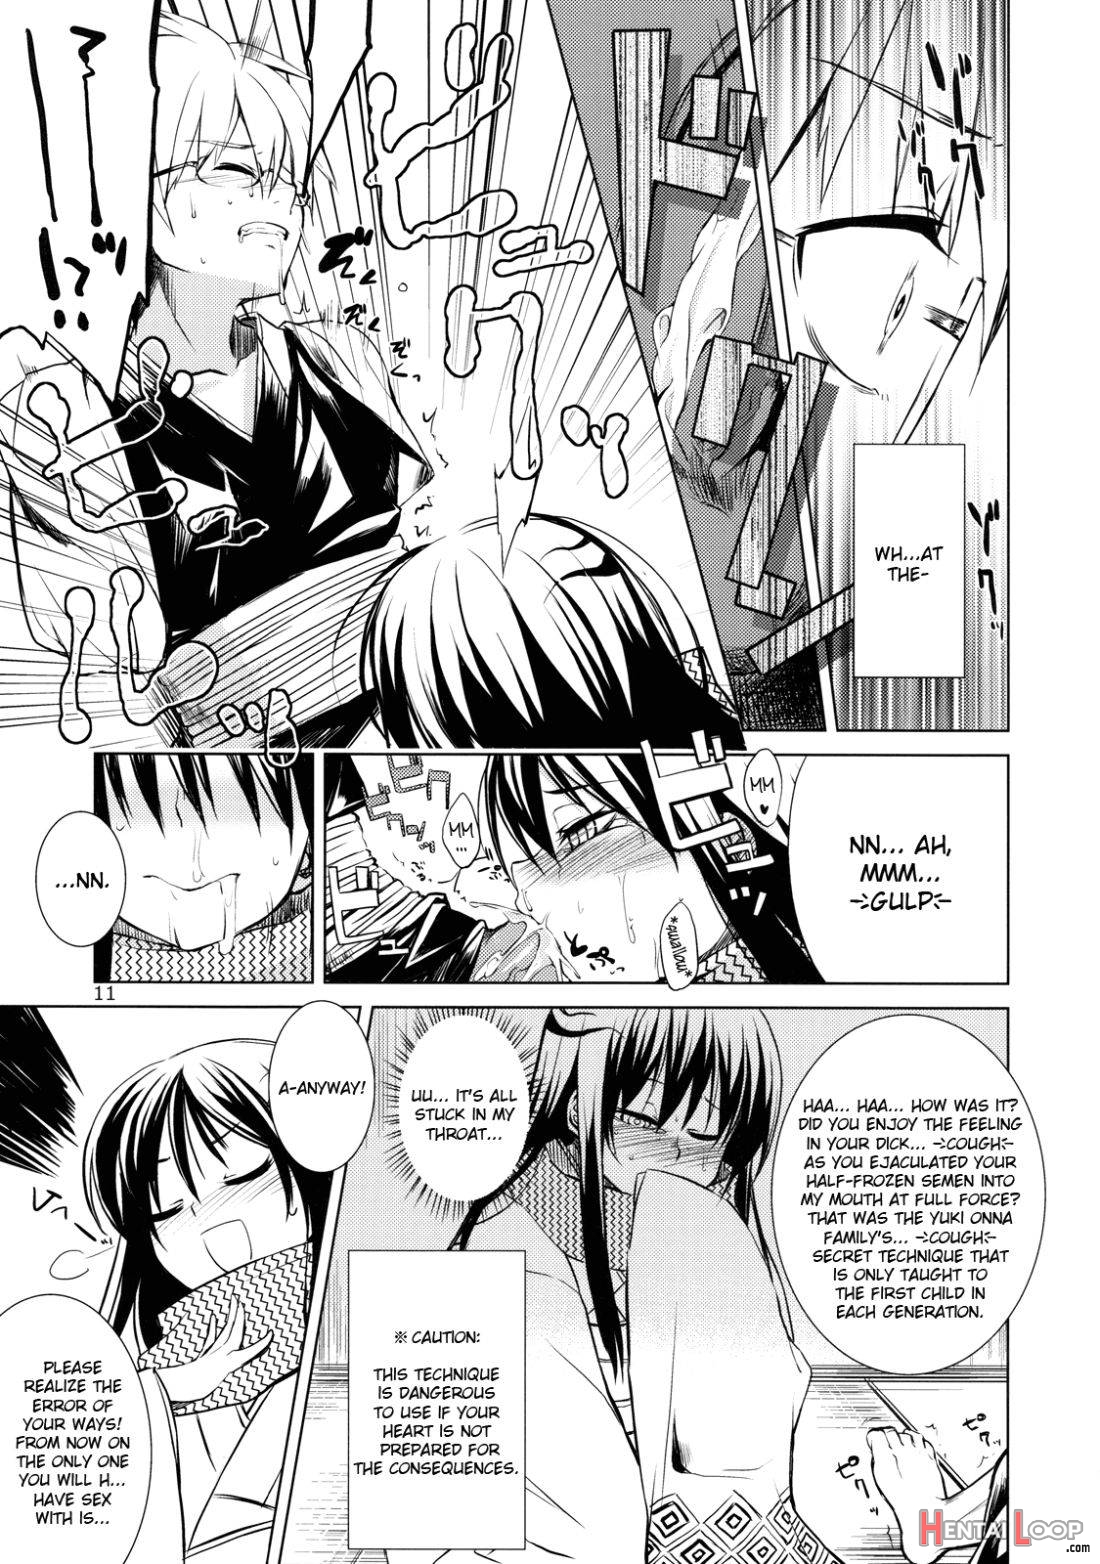 Setsugekka page 10